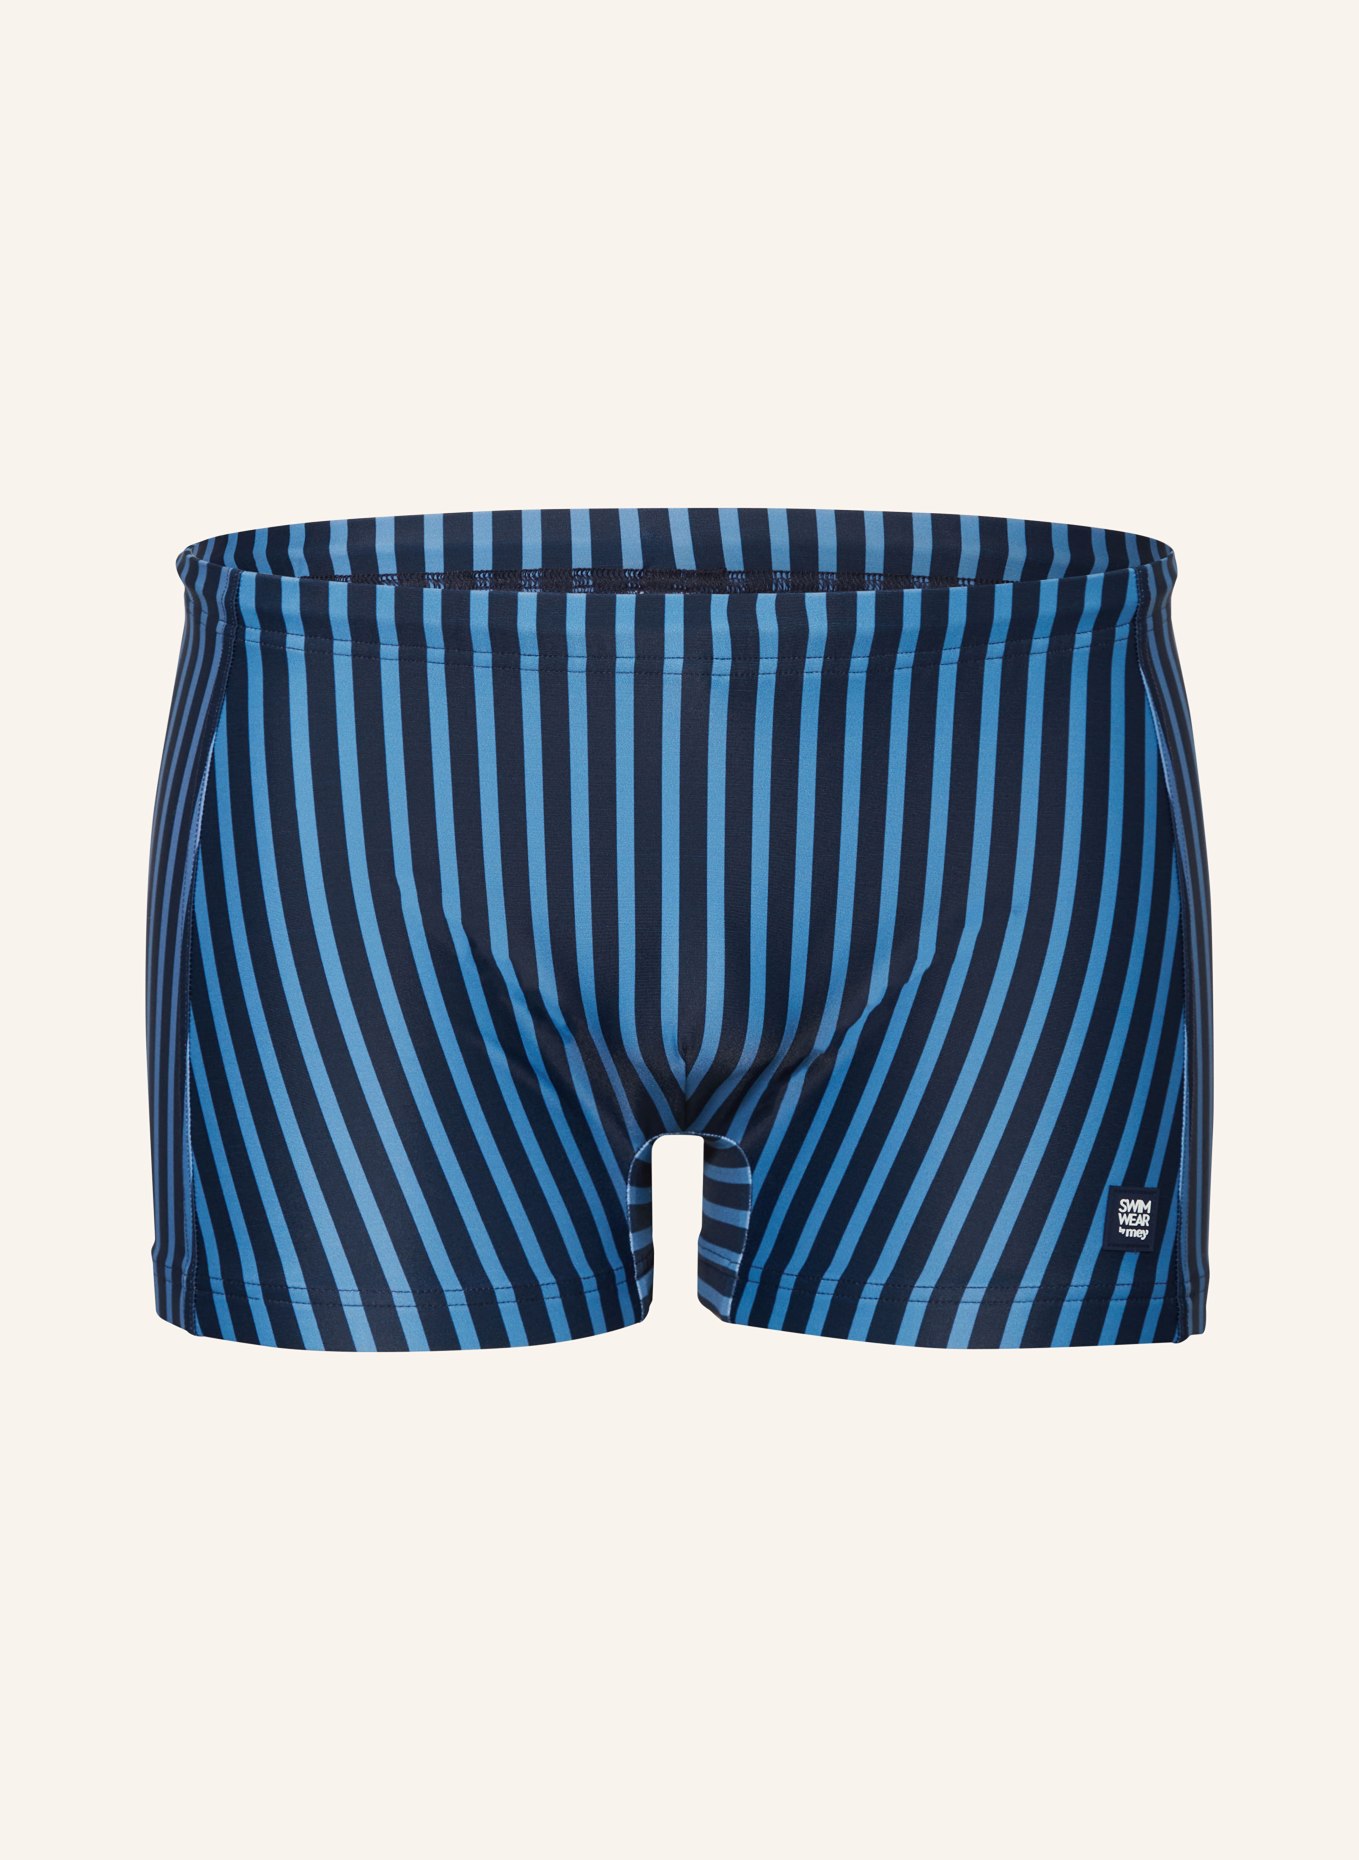 mey Swim shorts series BROADER STRIPE, Color: DARK BLUE/ BLUE (Image 1)